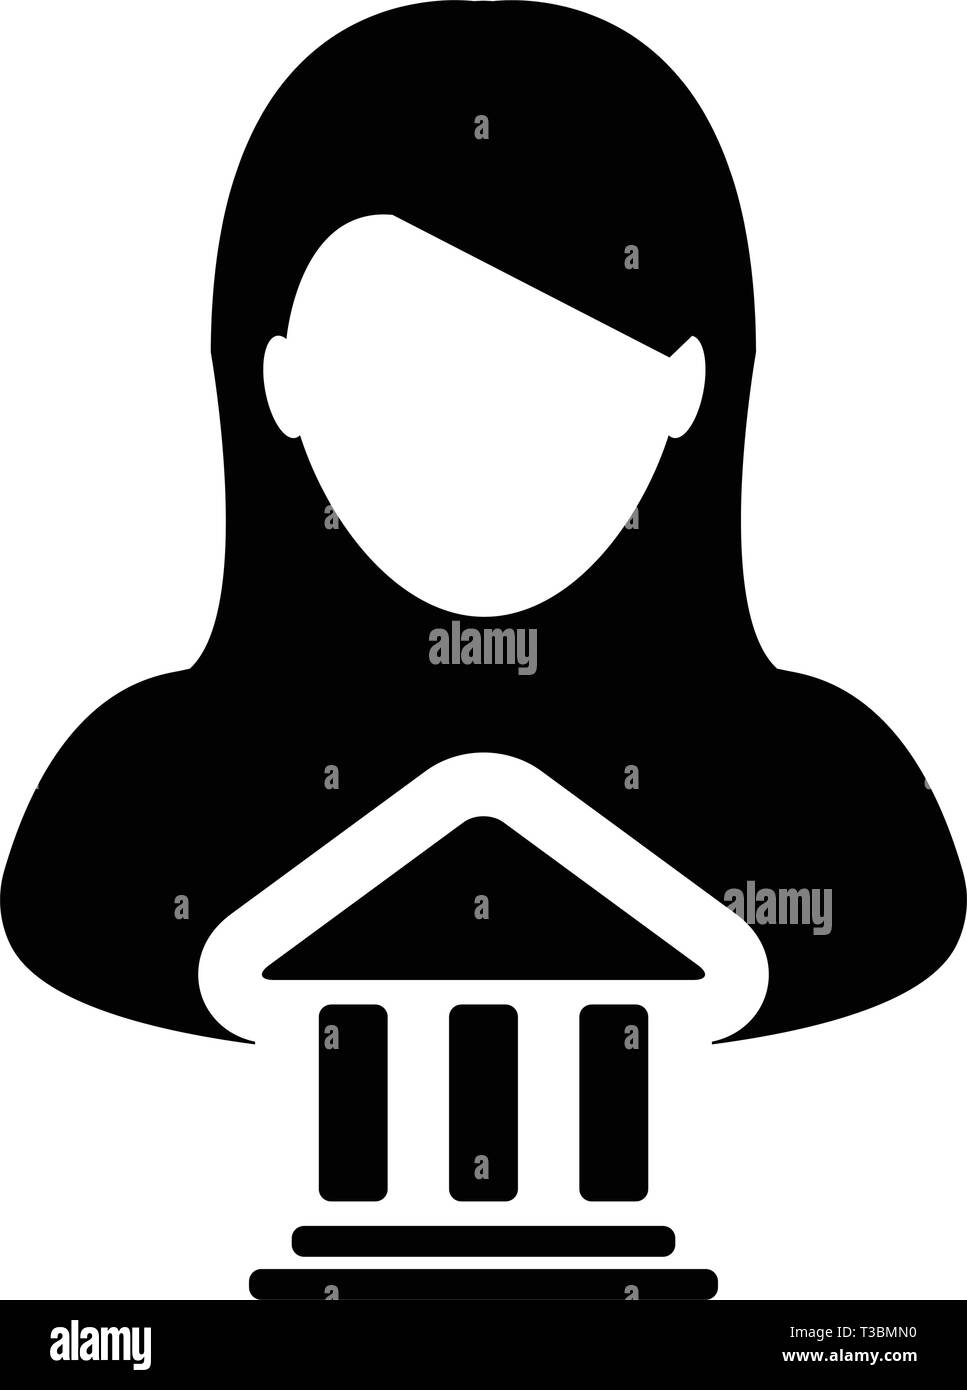 Einsparungen Symbol Vektor mit weiblichen Person Profil Avatar mit Gebäude Symbol für Banking und Finance in Glyph Piktogramm Abbildung Stock Vektor